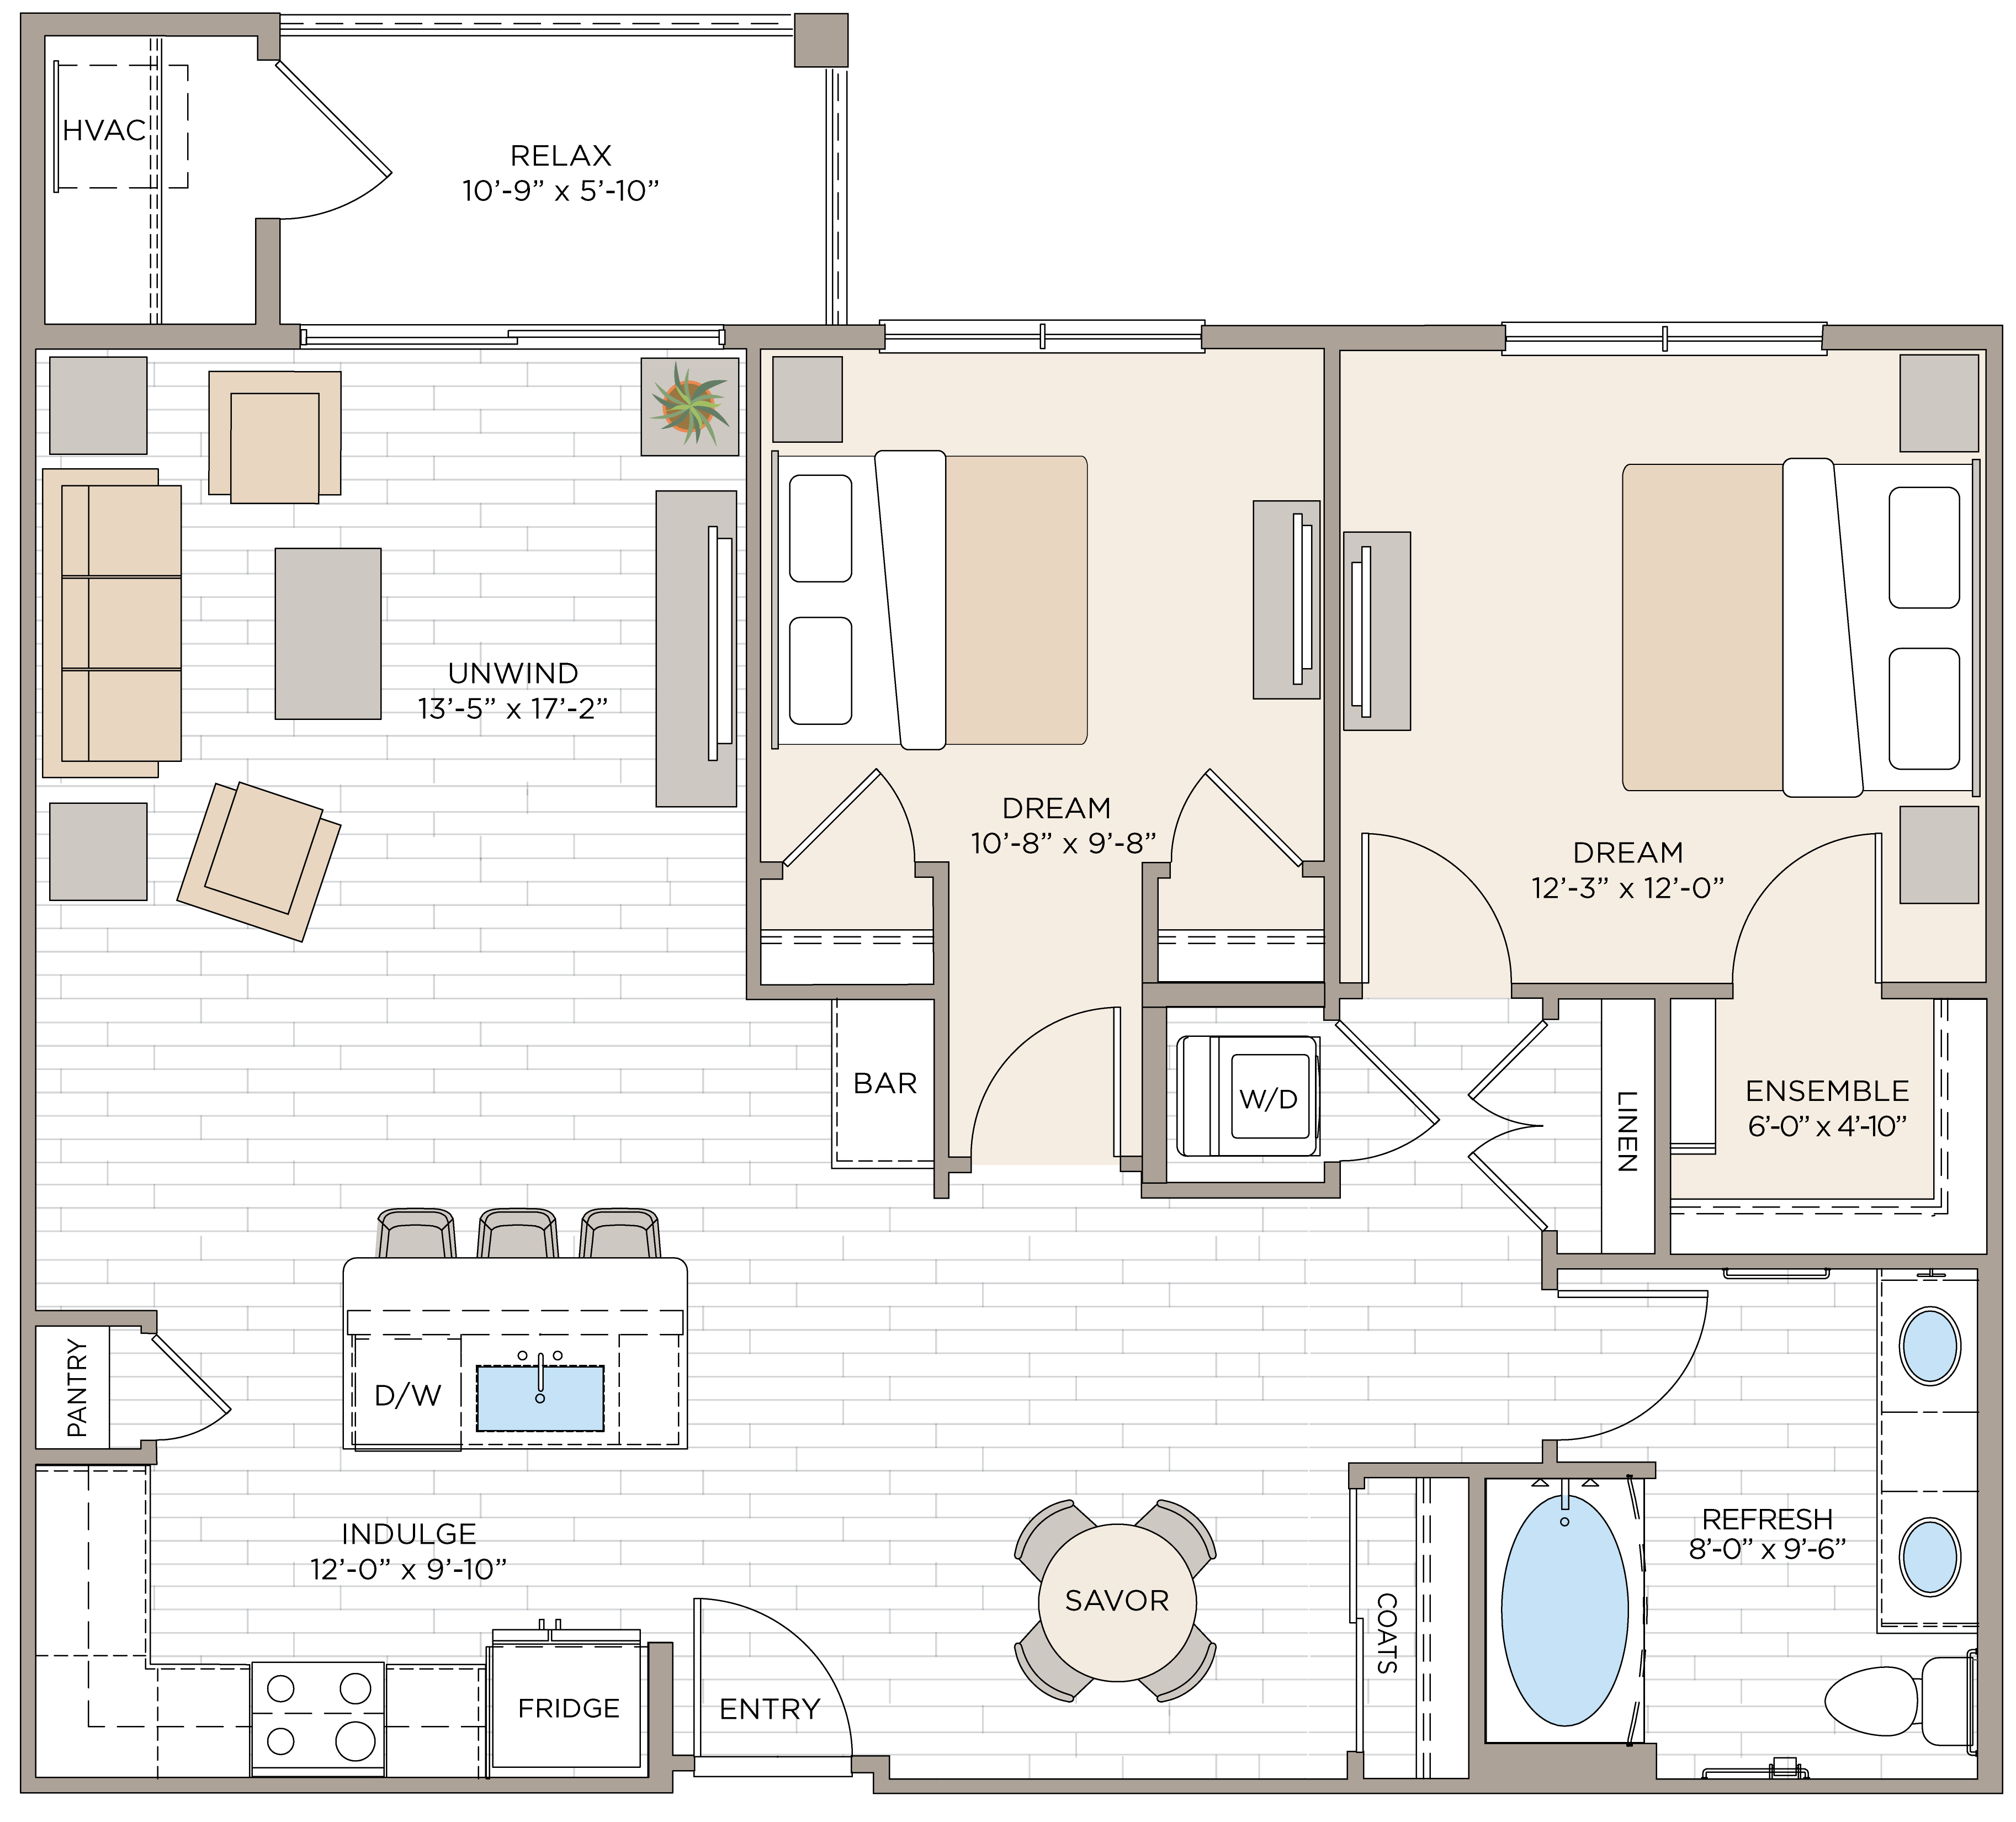 Floorplan for Apartment #14325, 2 bedroom unit at Halstead Maynard Crossing